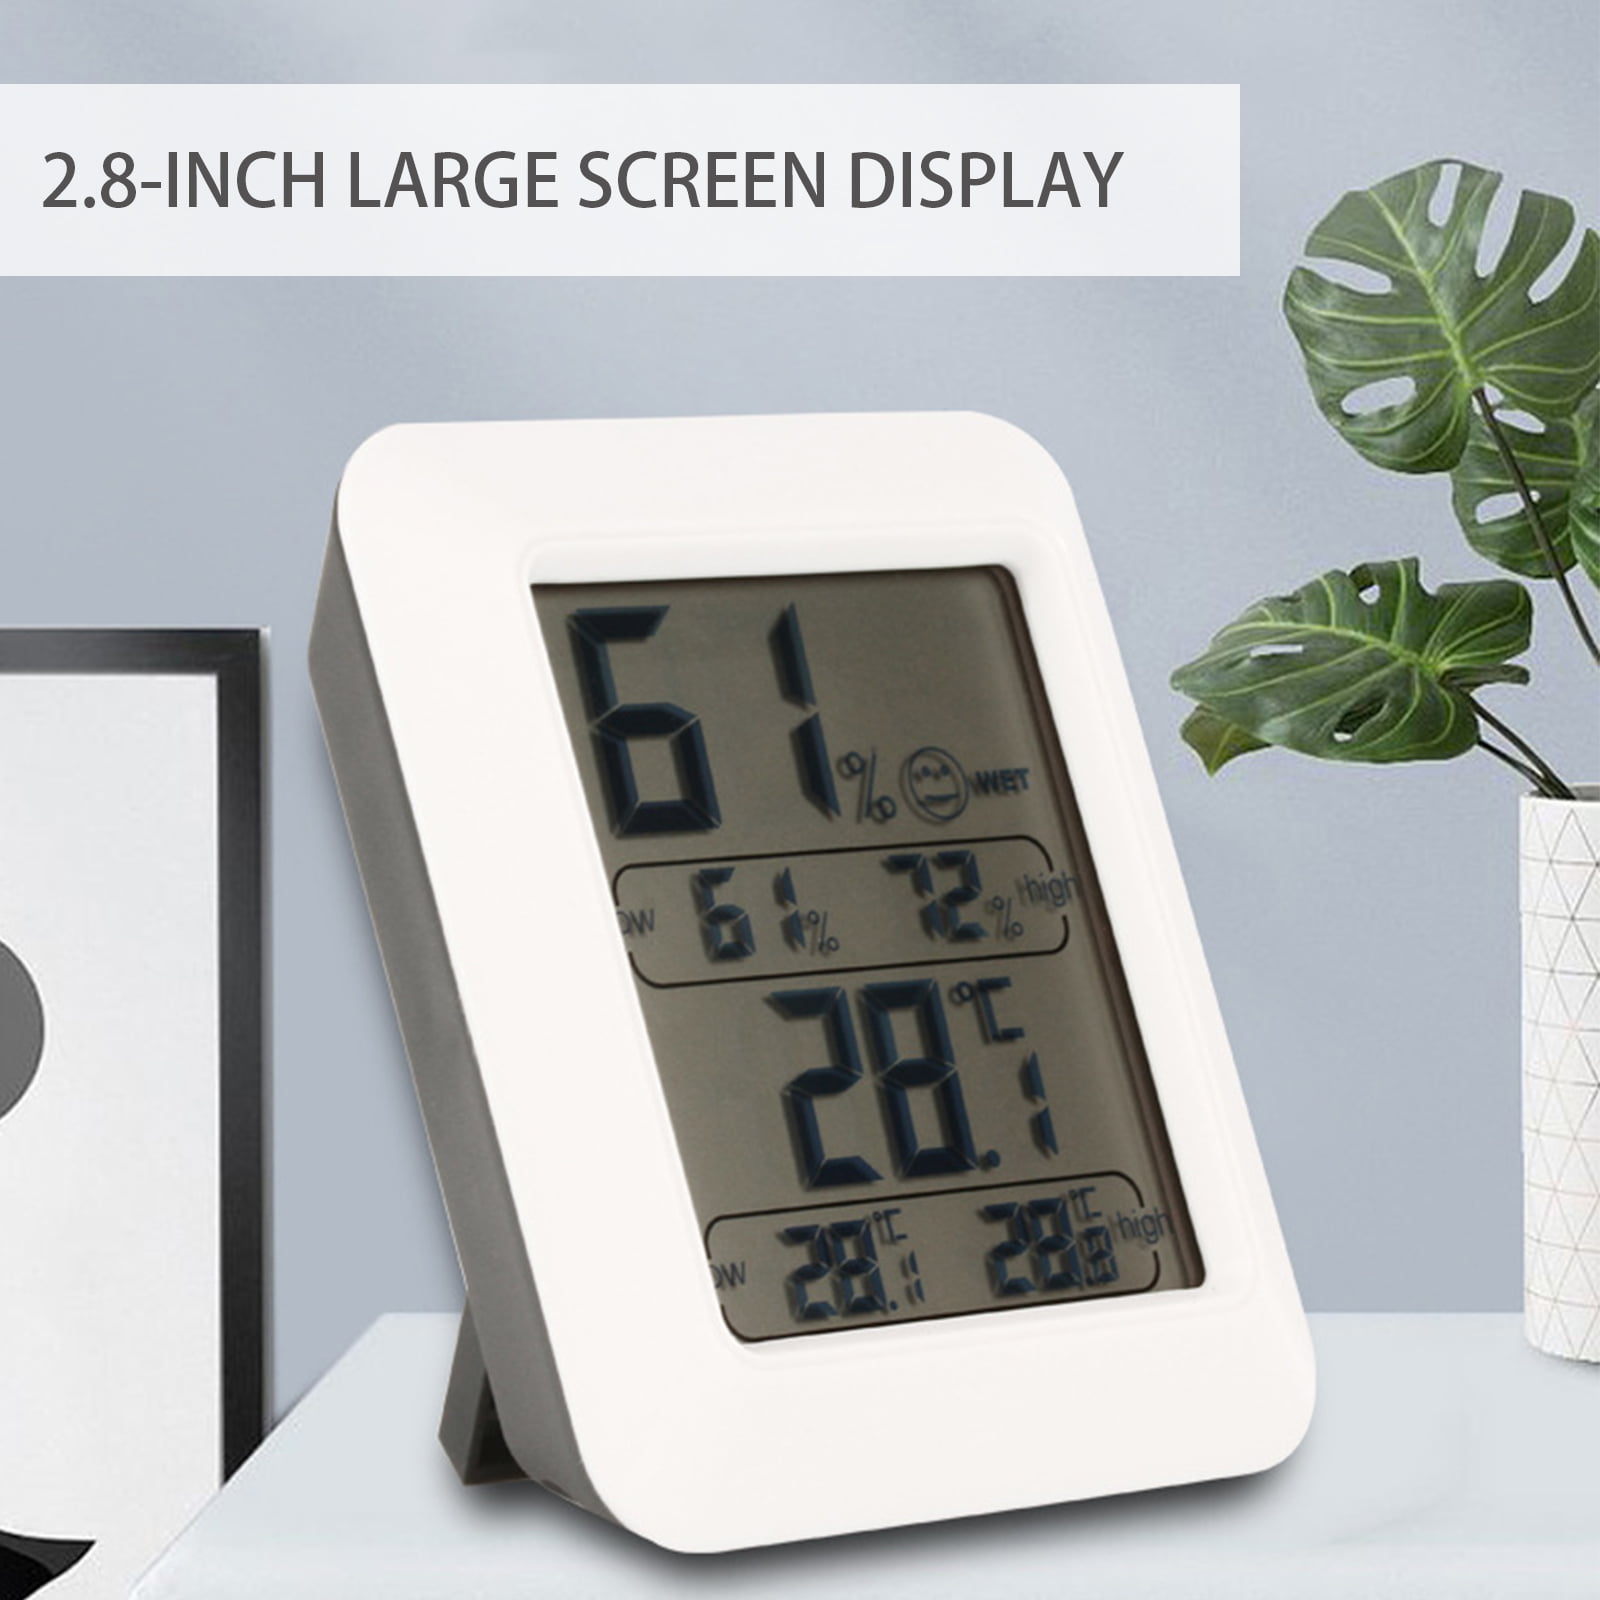 New Indoor Car Home LCD Digital Display Room Temperature Meter/Thermometer PAT 